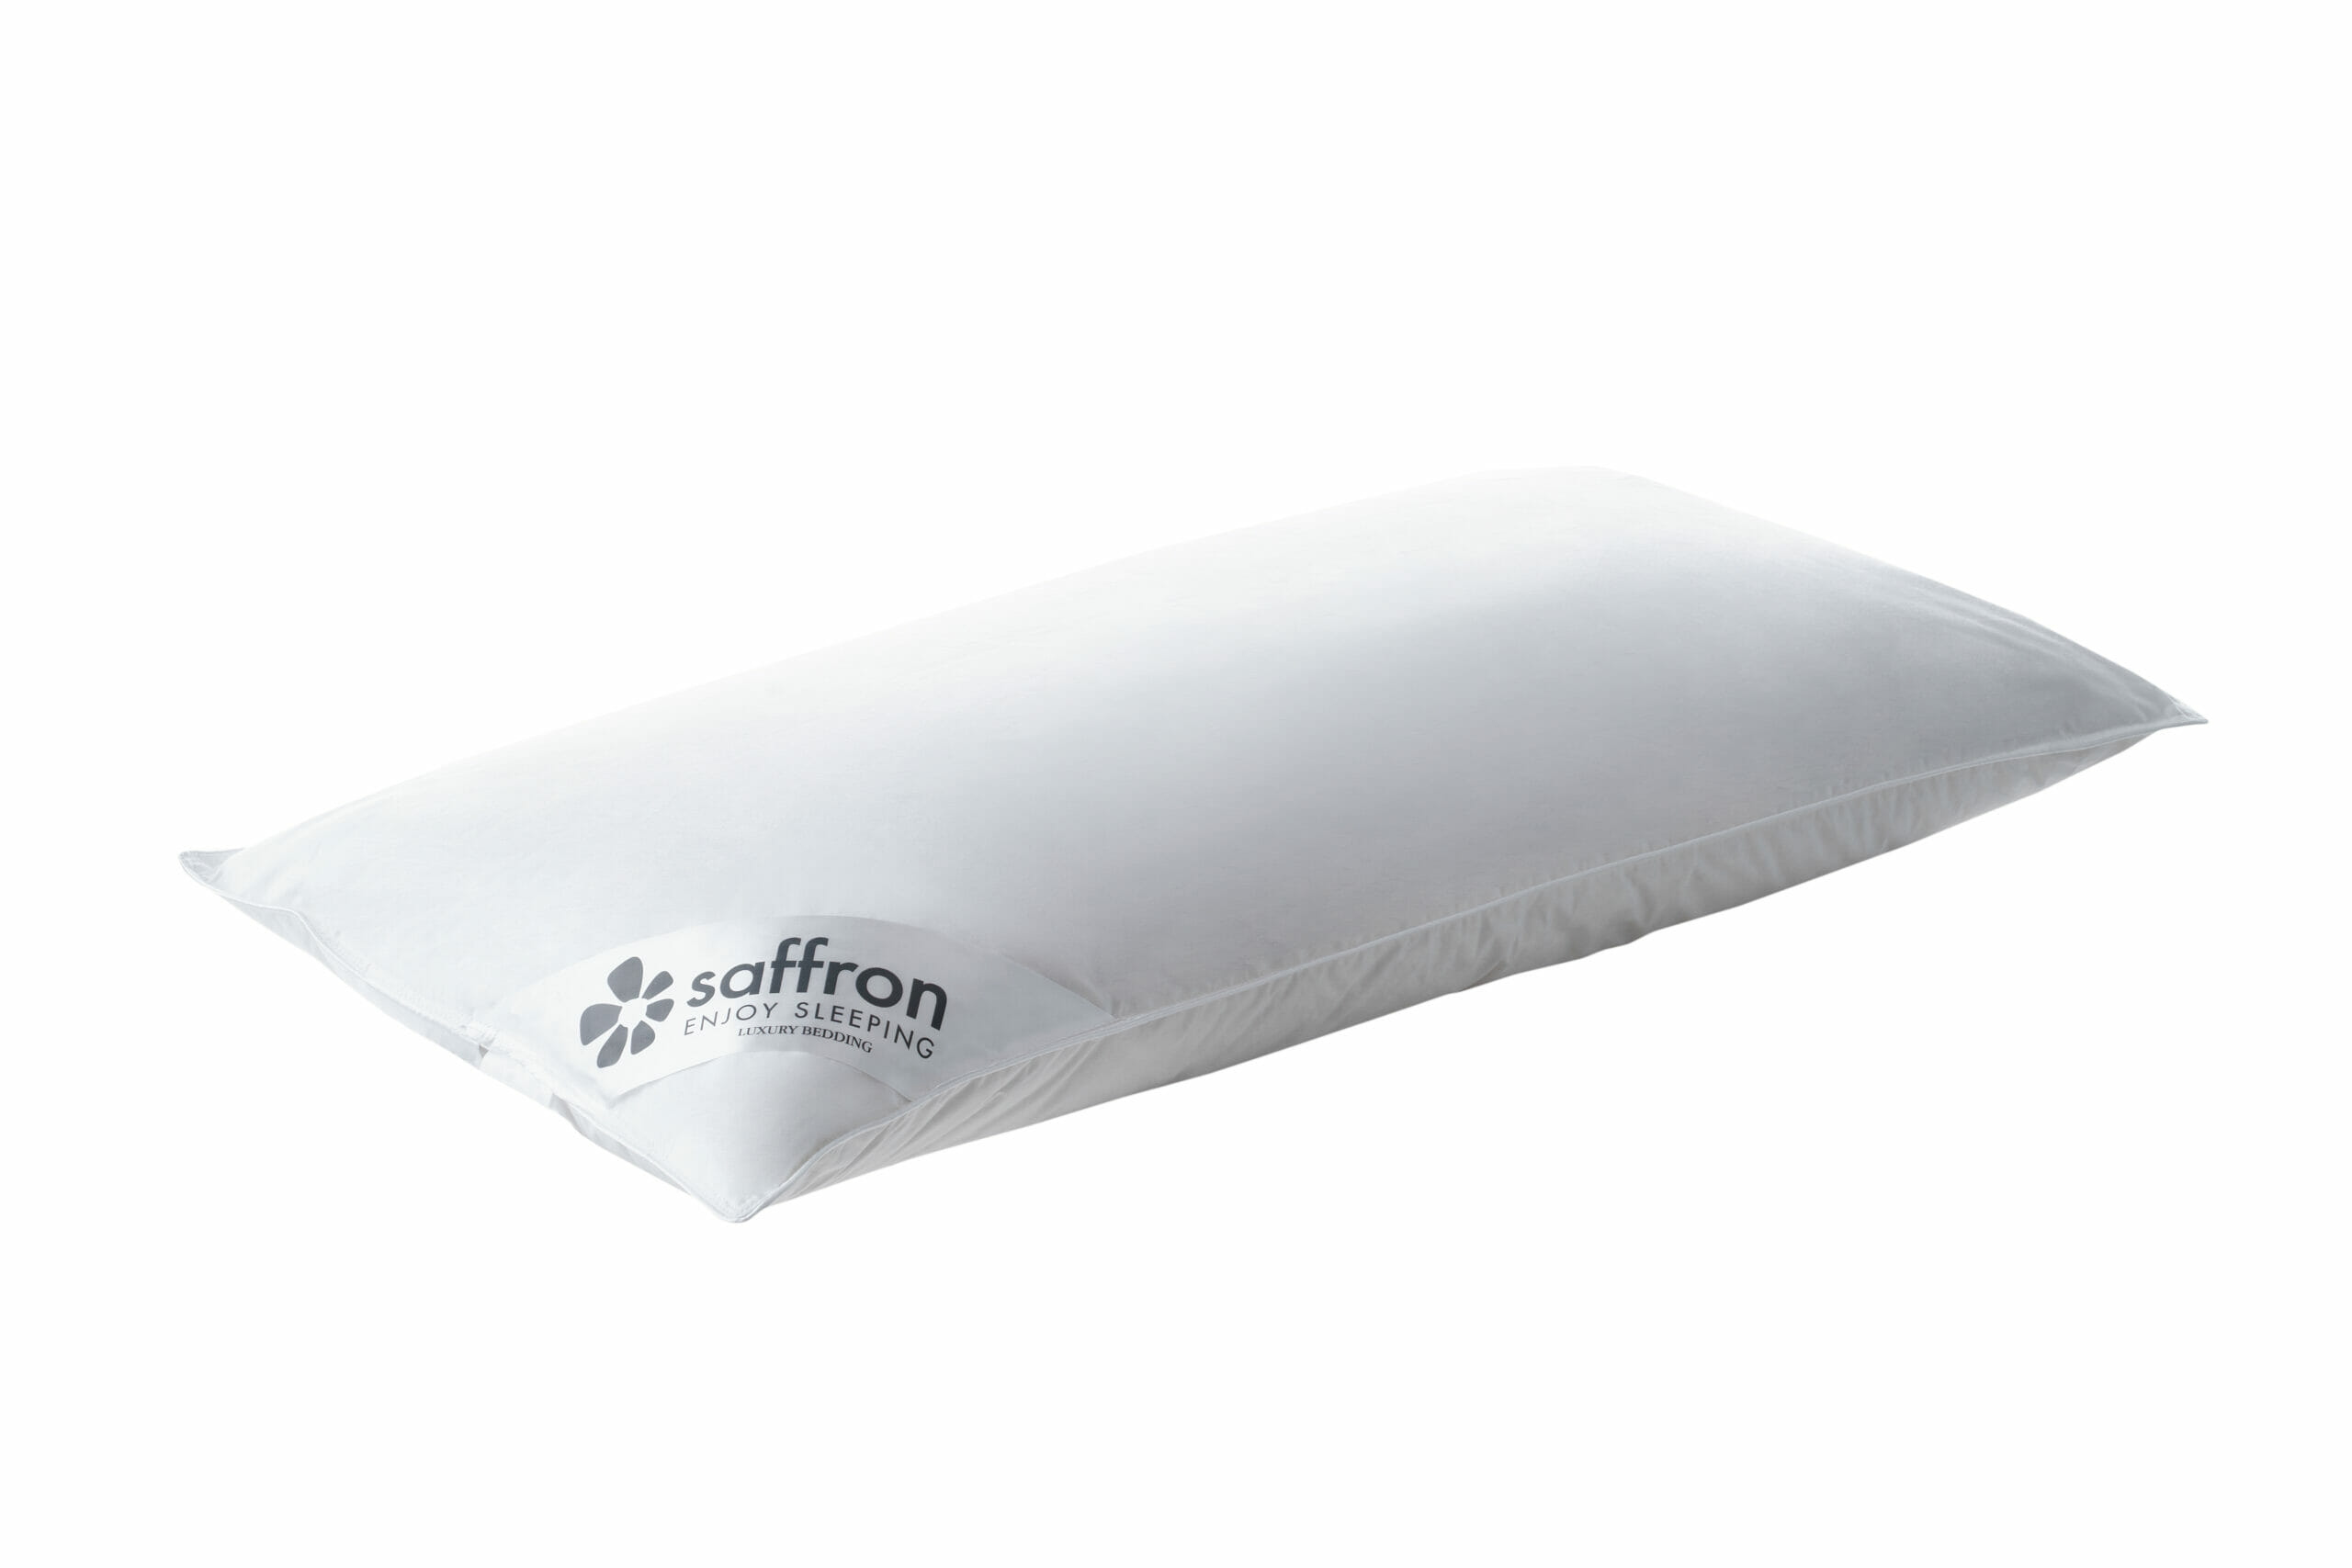 saffron-beds-trio-cushion-pillow-40-x-80